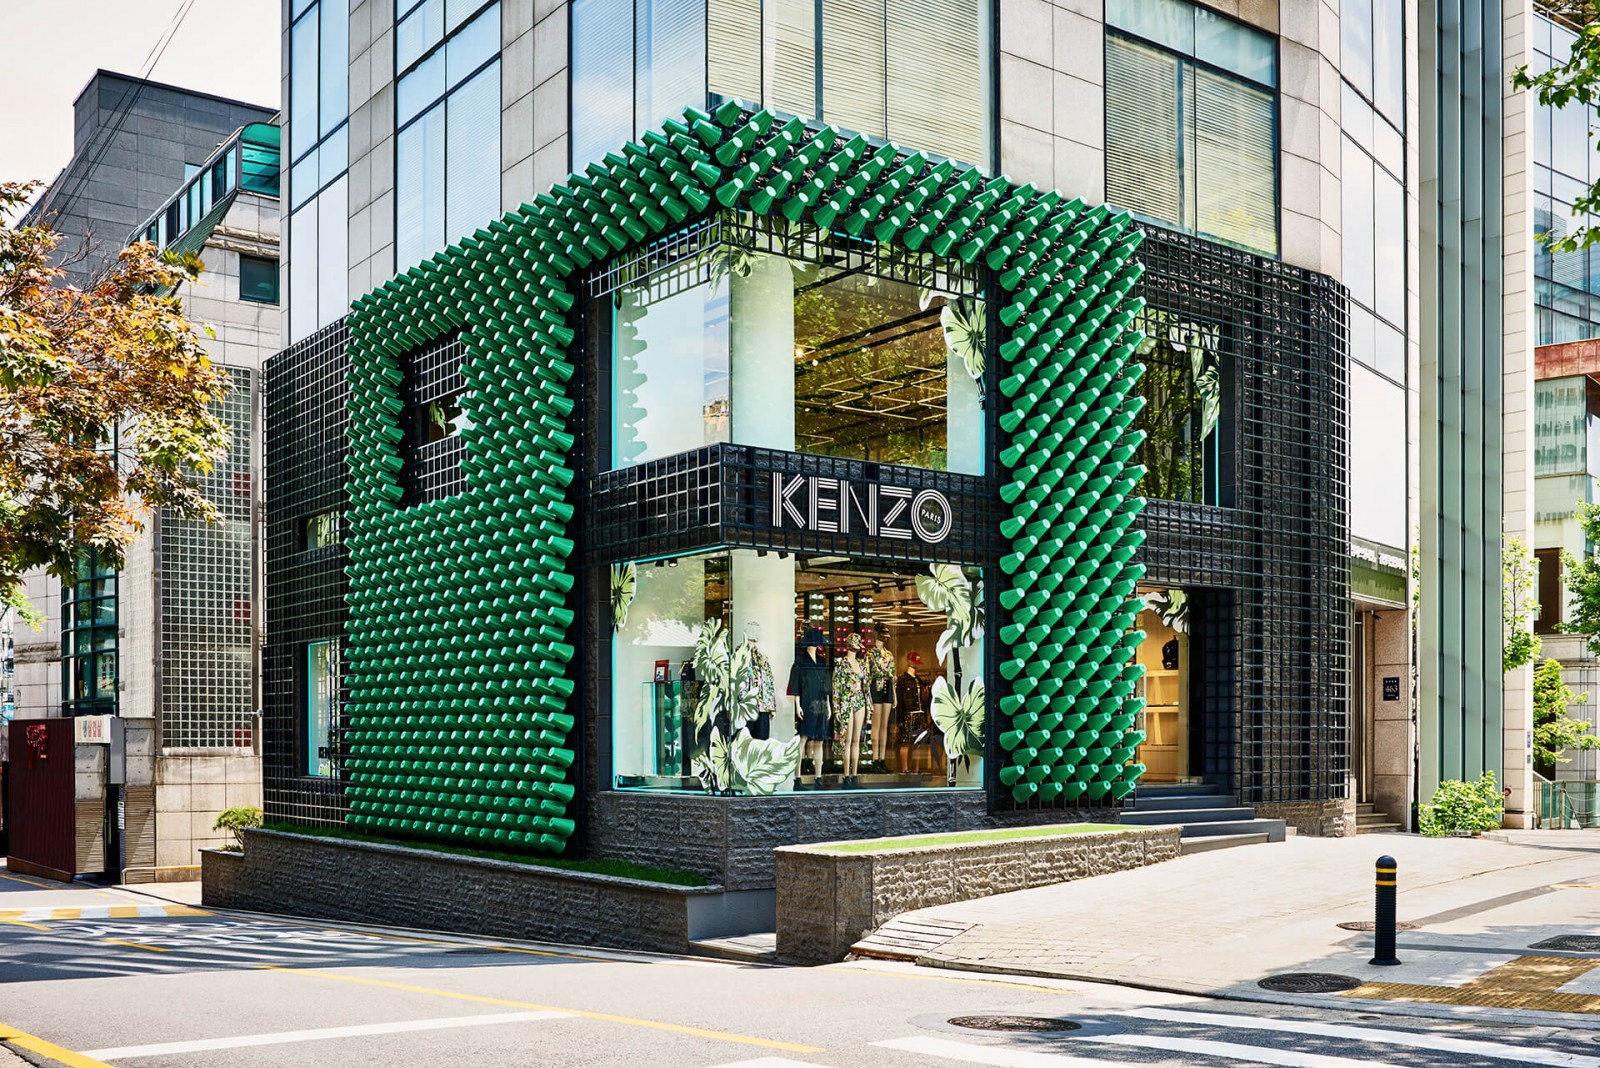 Nhà sáng lập thương hiệu BAPE chính thức ngồi vào vị trí giám đốc nghệ thuật của hãng thời trang Kenzo